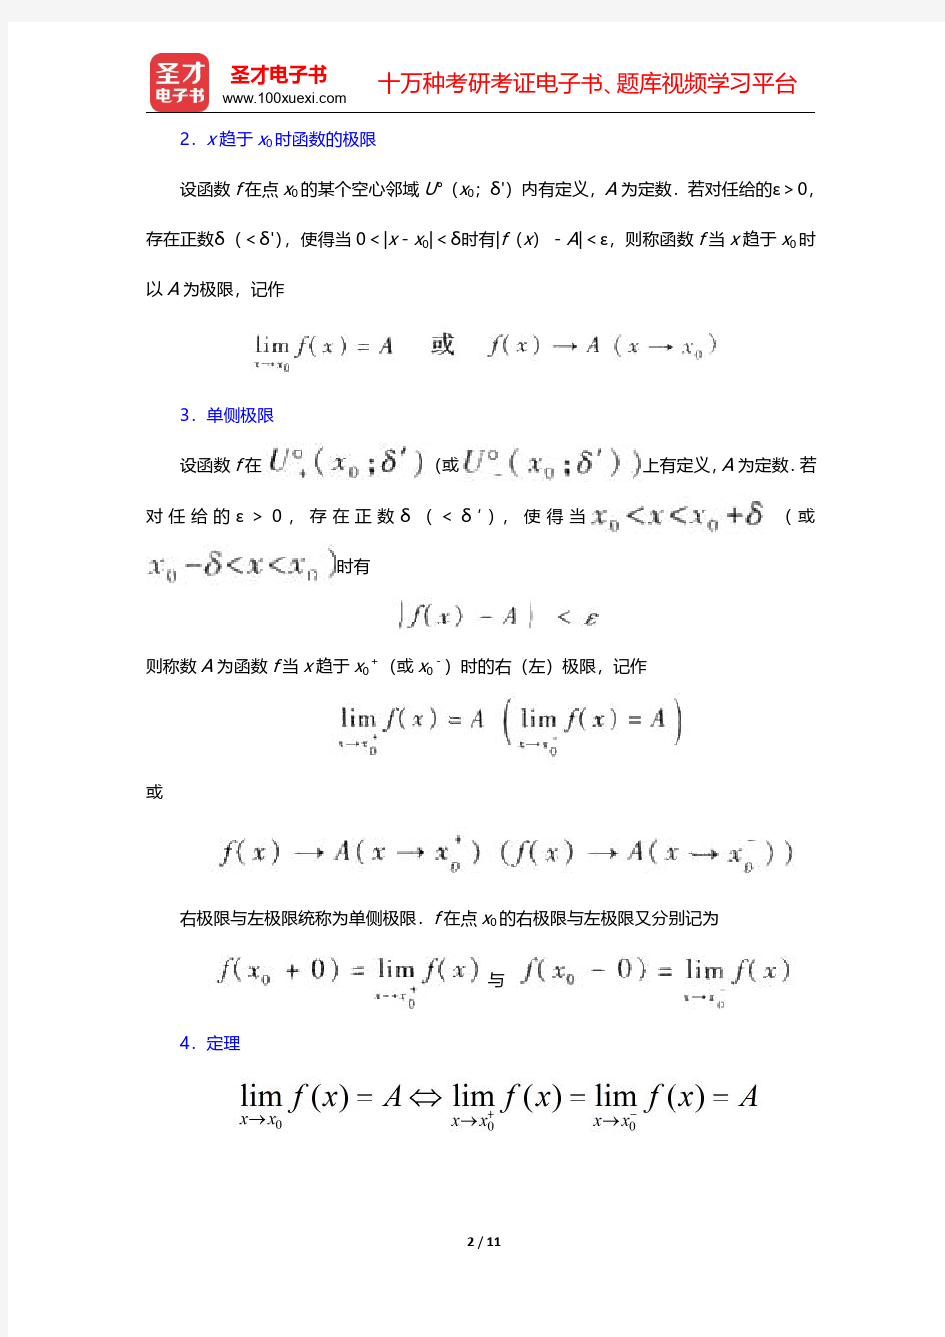 华东师范大学数学系《数学分析》讲义函数极限【圣才出品】